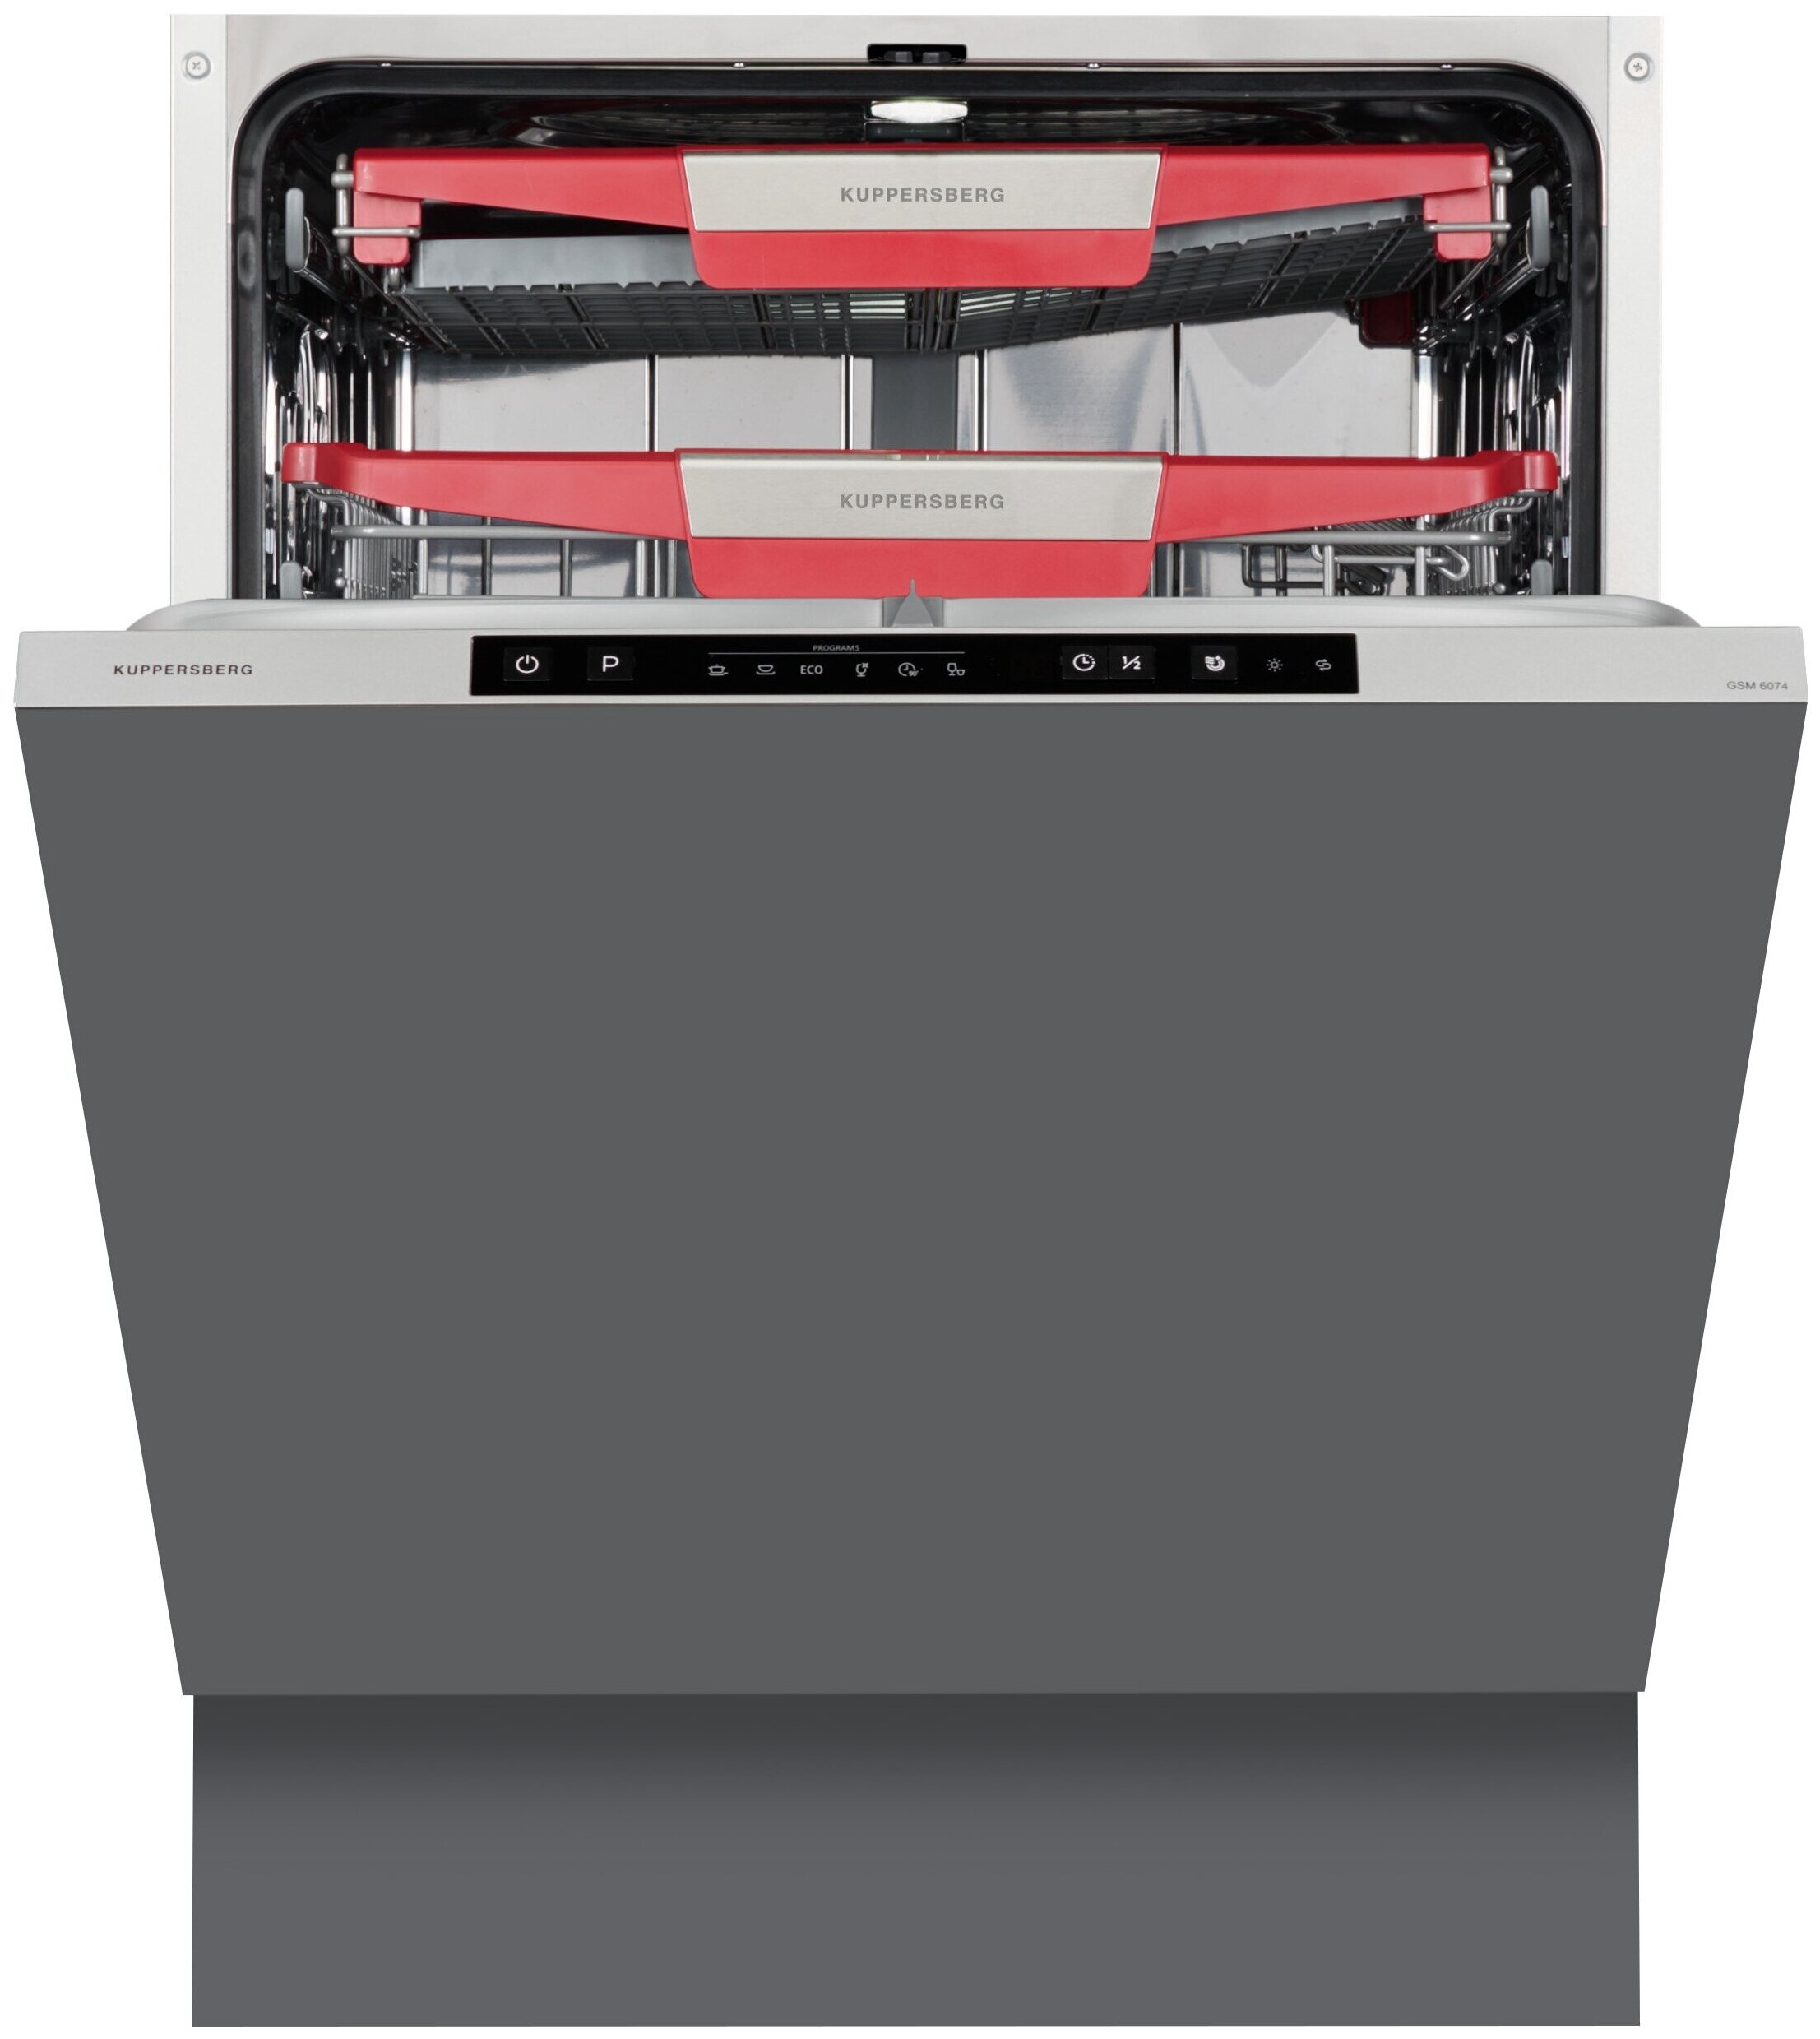 Kuppersberg gsm отзывы. Встраиваемая посудомоечная машина Kuppersberg GLM 6080. Посудомоечная машина Куперсберг GLM 60 75. Kuppersberg GLM 6090. GLM 6075 Kuppersberg посудомоечная машина кабель питания длина.